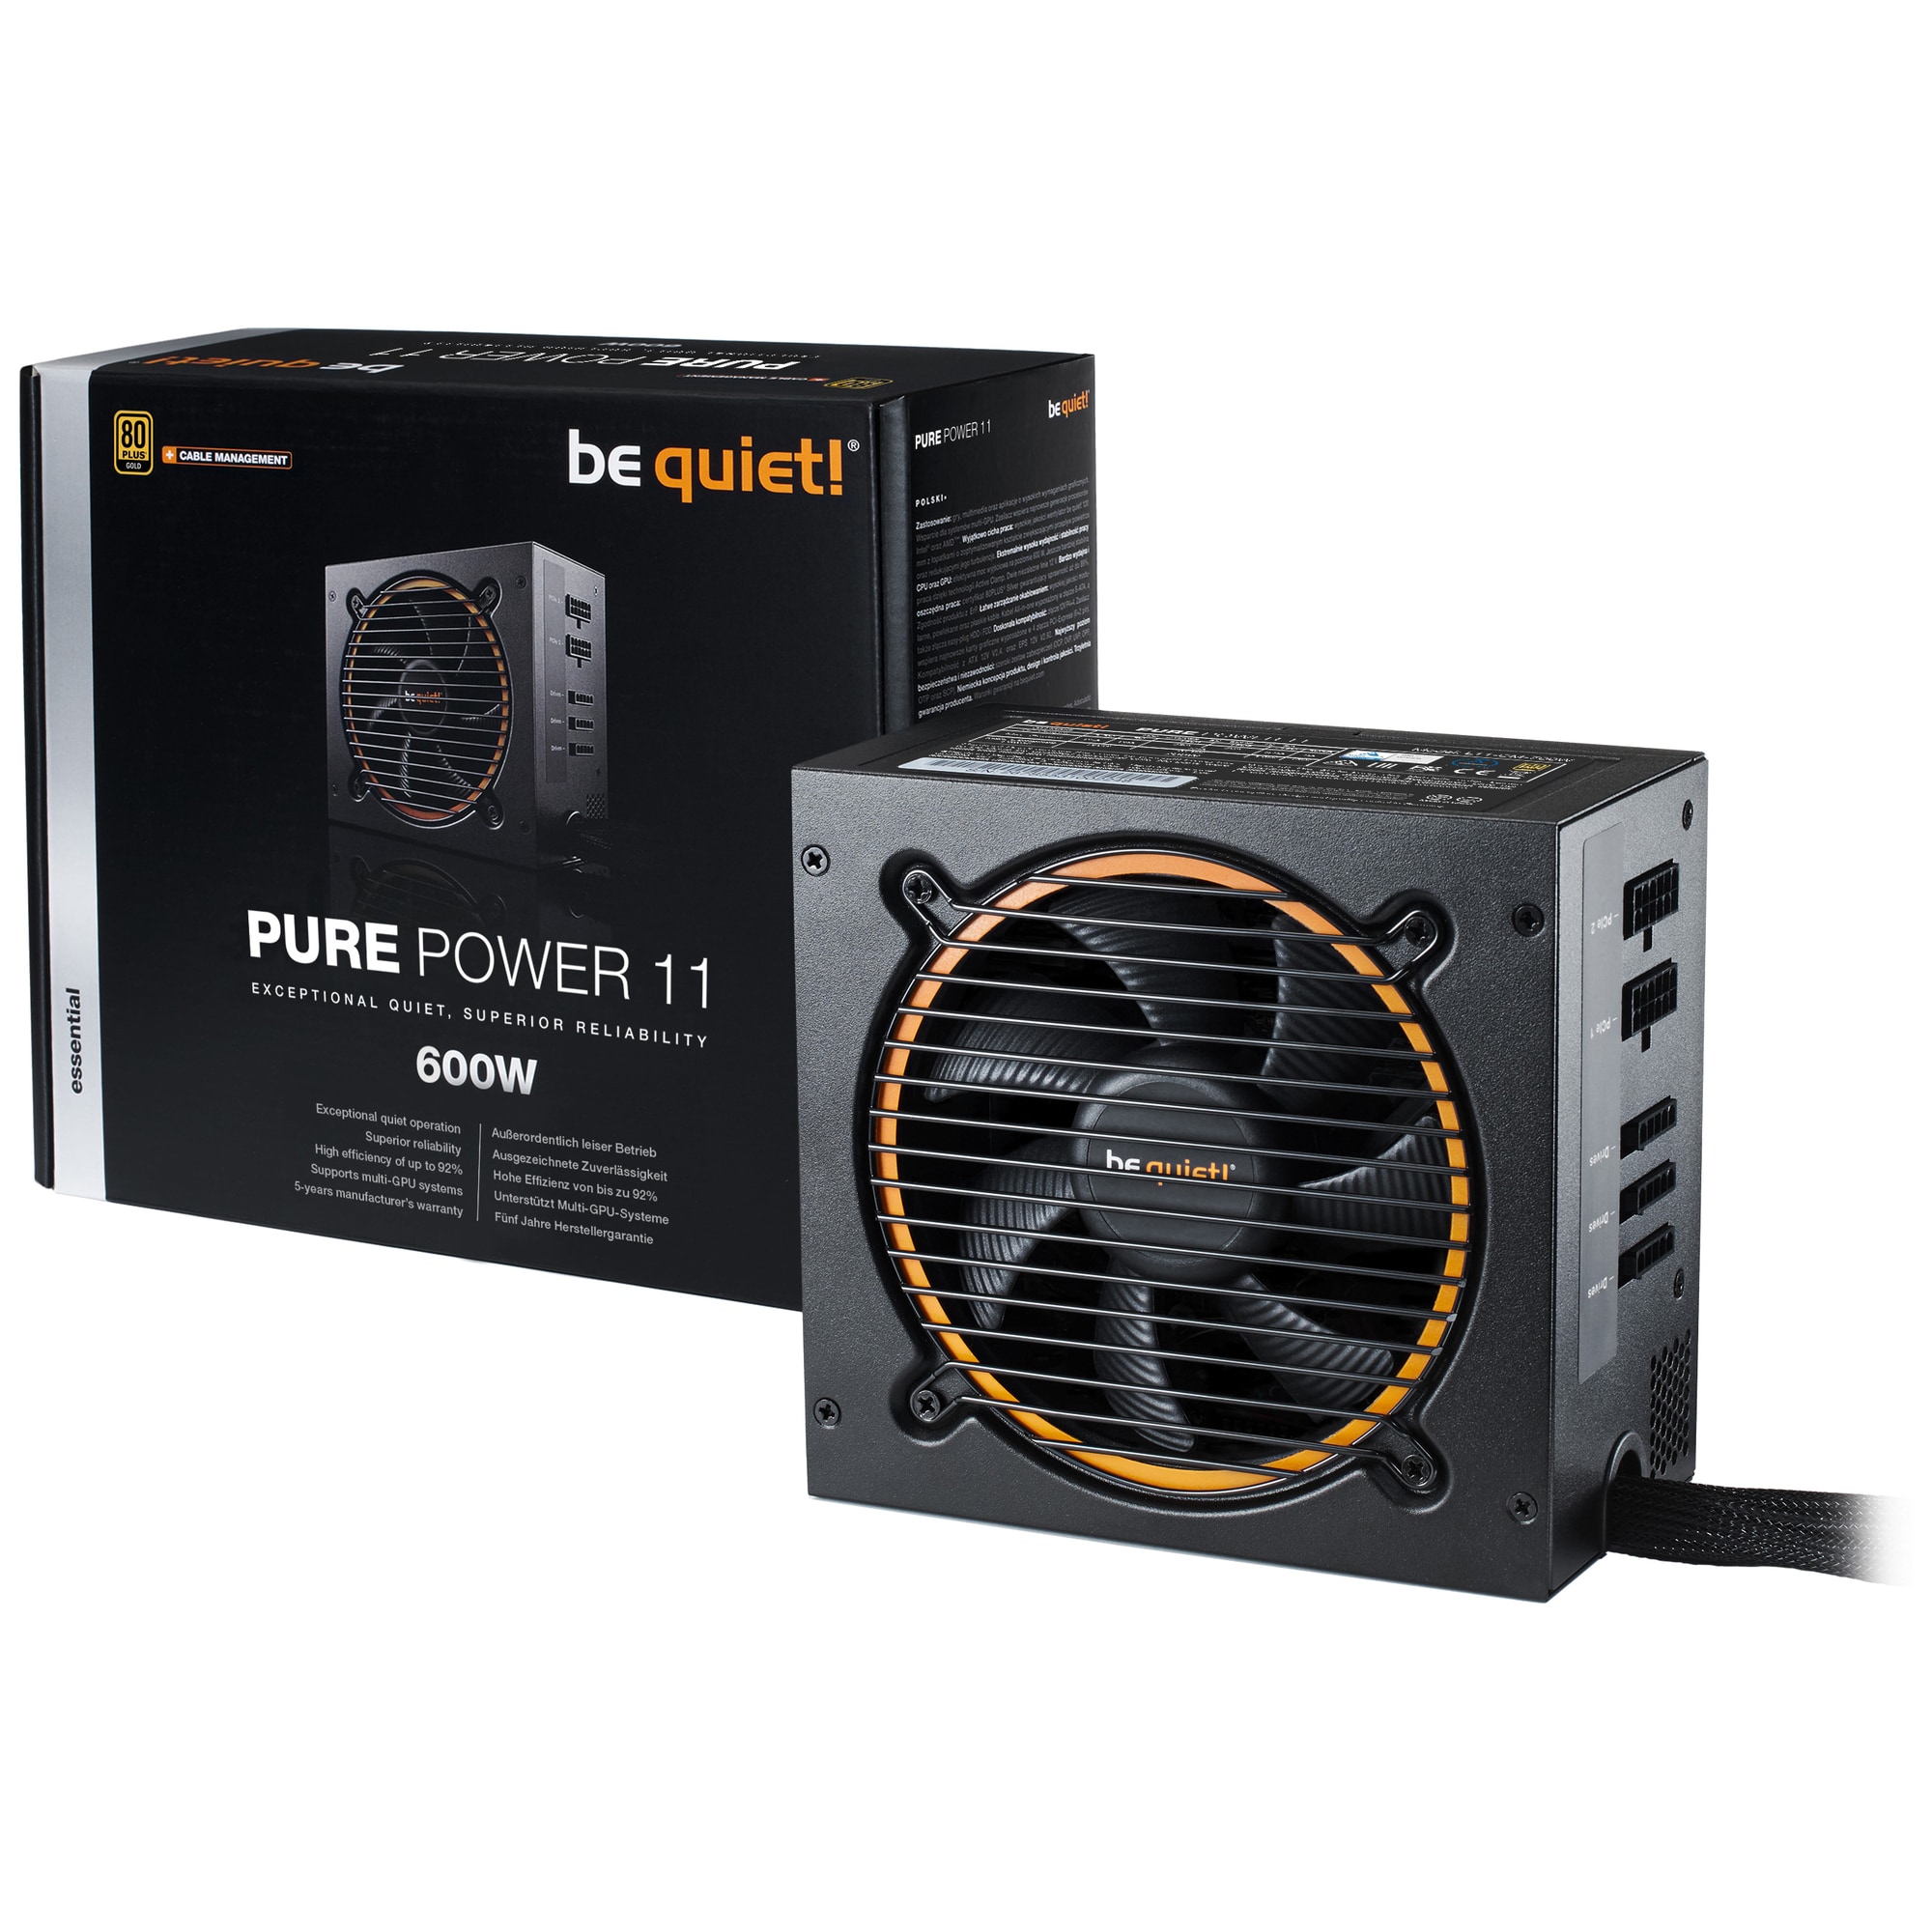 be quiet! Pure Power 11 600W virtalähde - Gigantti verkkokauppa